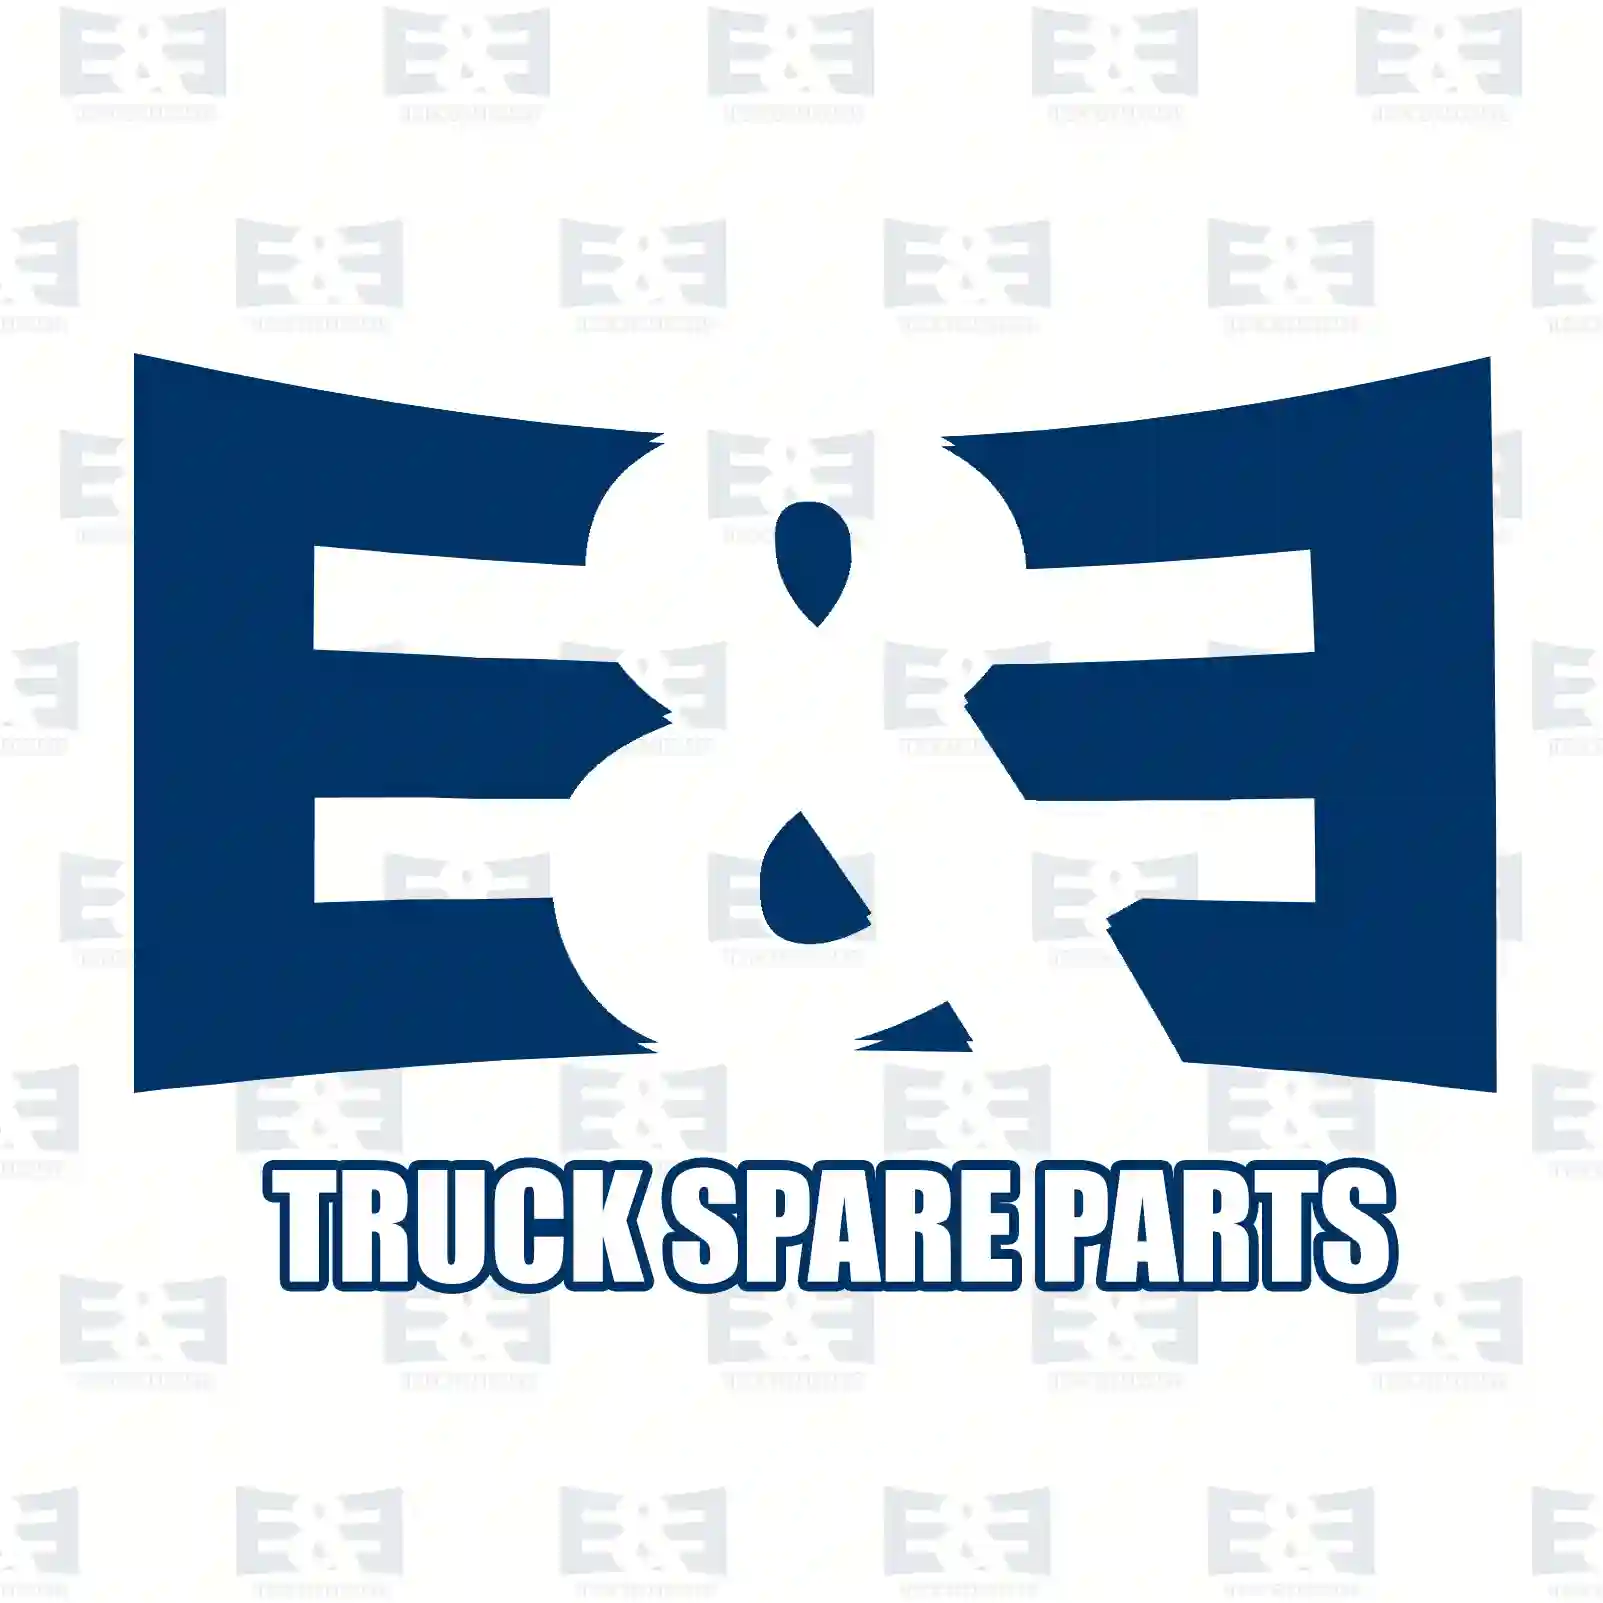 Step well case, left, 2E2289968, 20538006 ||  2E2289968 E&E Truck Spare Parts | Truck Spare Parts, Auotomotive Spare Parts Step well case, left, 2E2289968, 20538006 ||  2E2289968 E&E Truck Spare Parts | Truck Spare Parts, Auotomotive Spare Parts